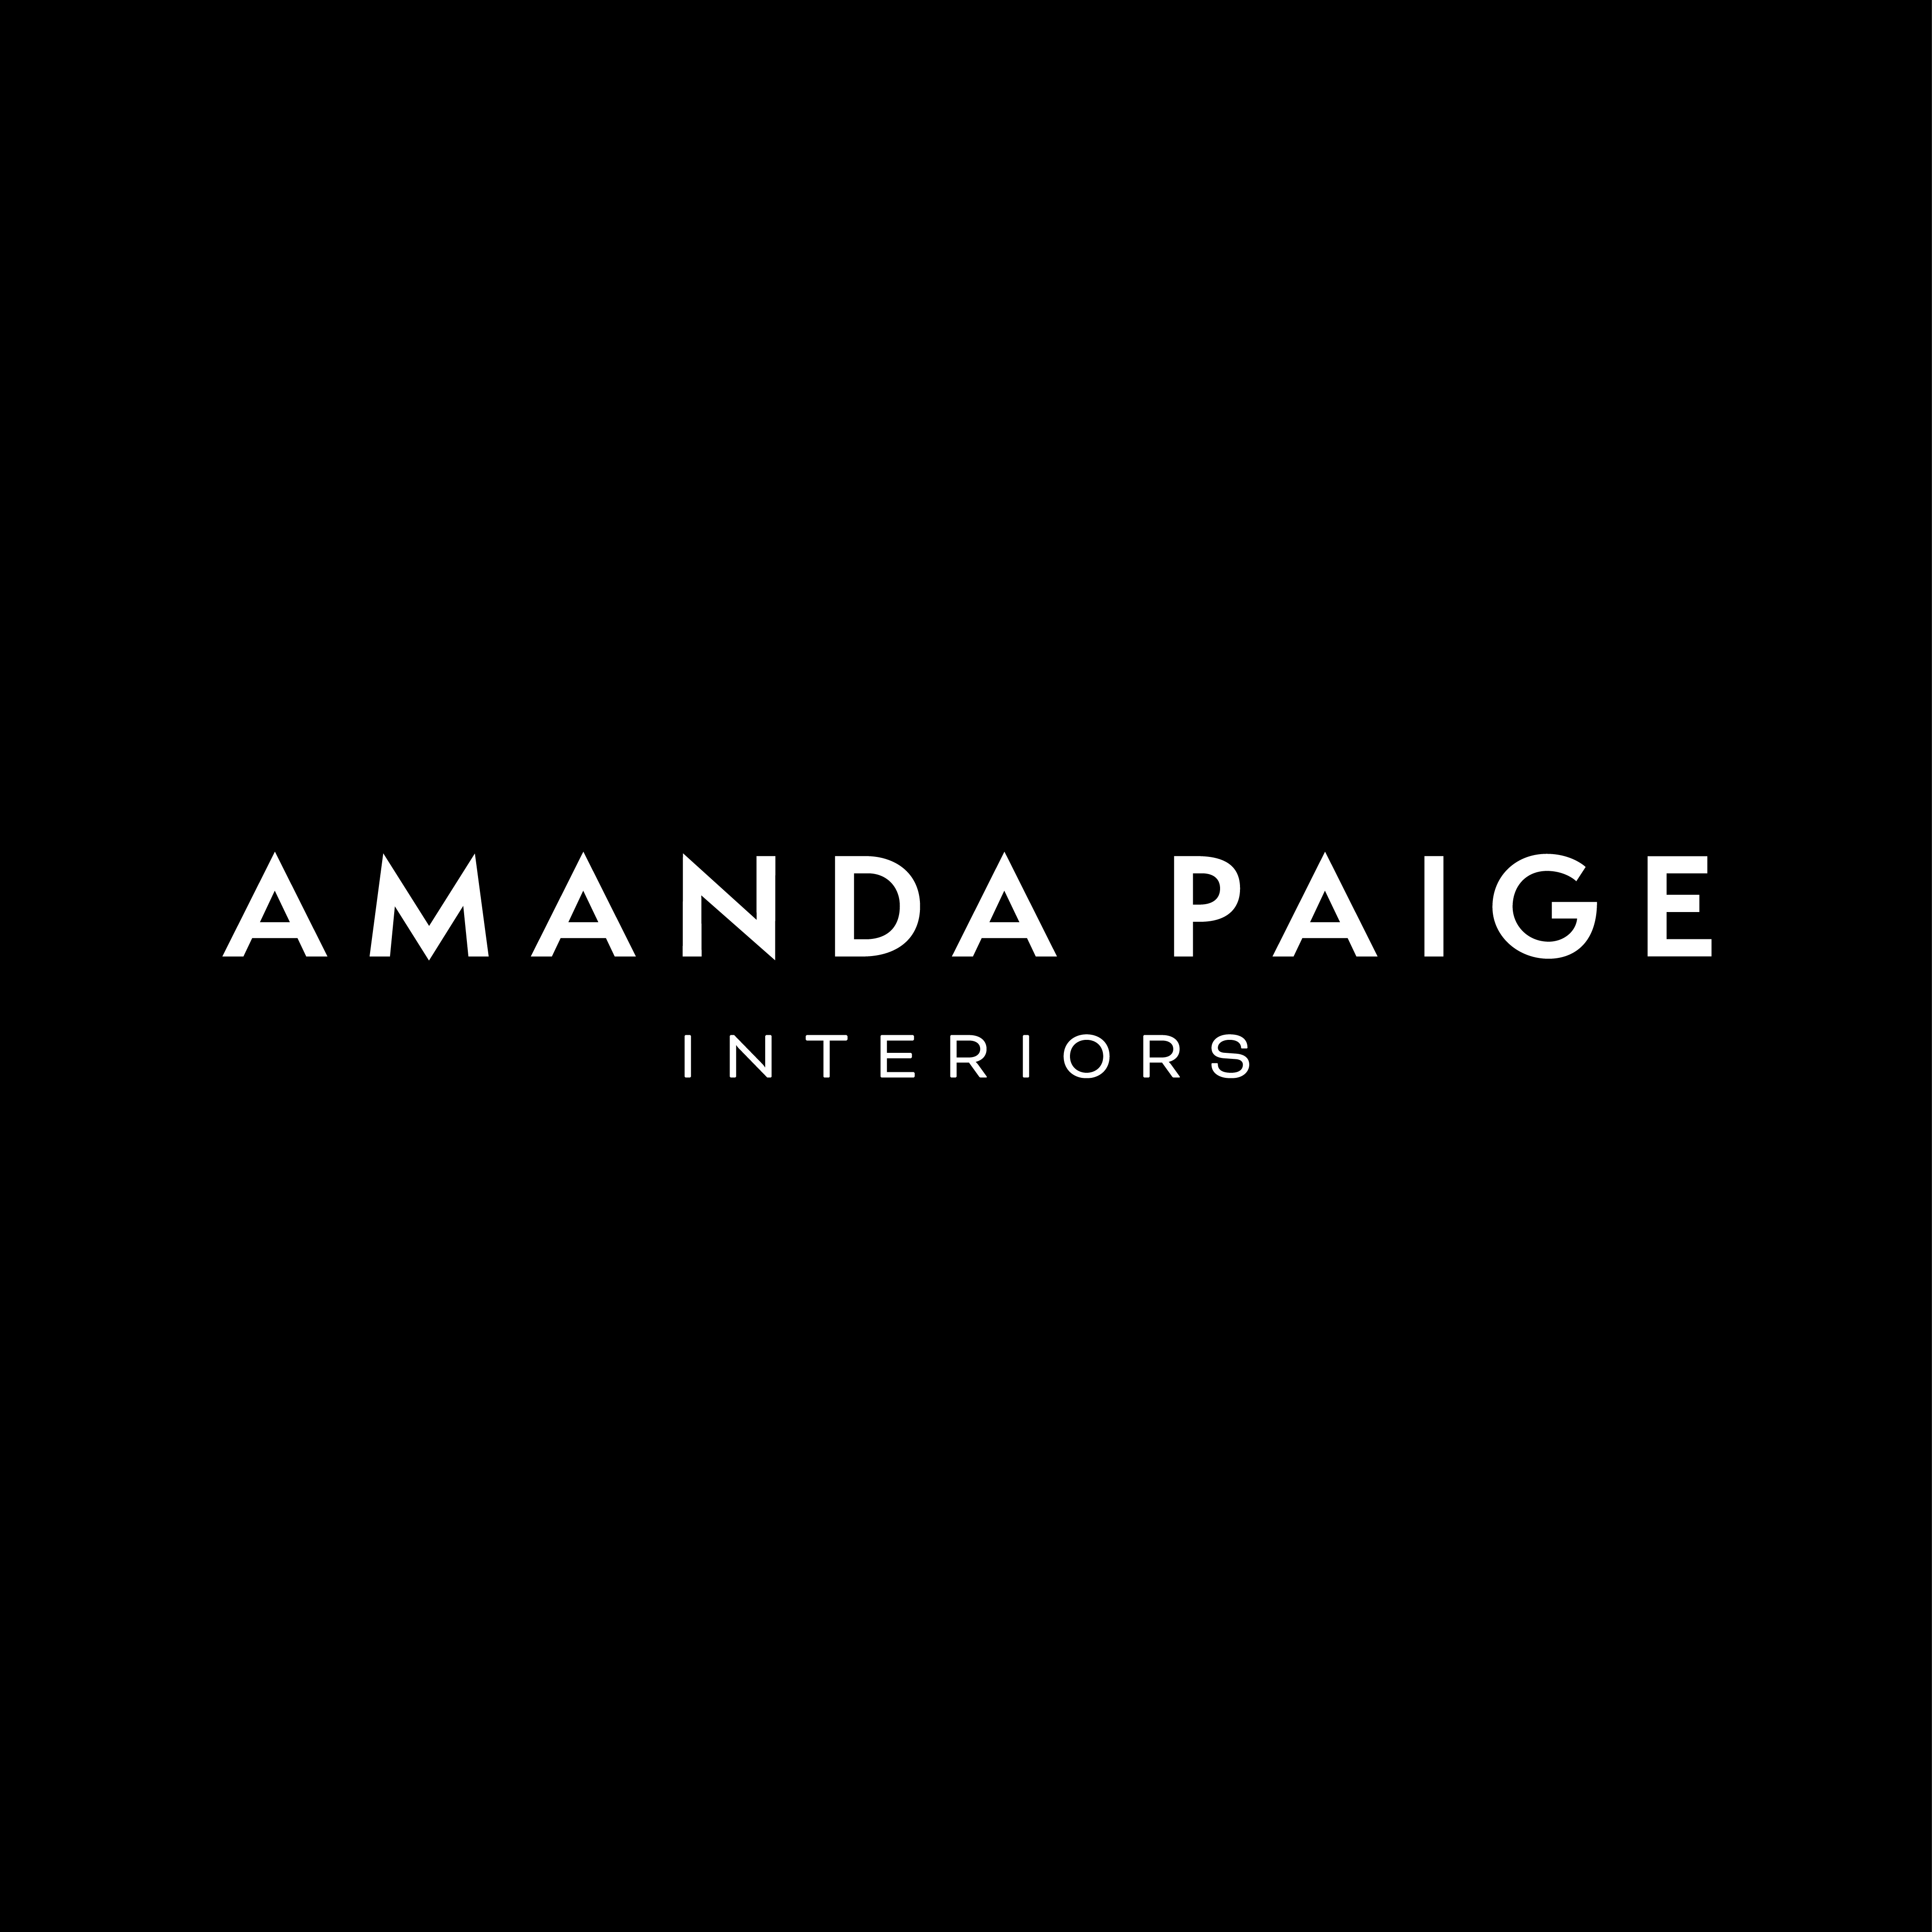 AMANDA PAIGE INTERIORS logo